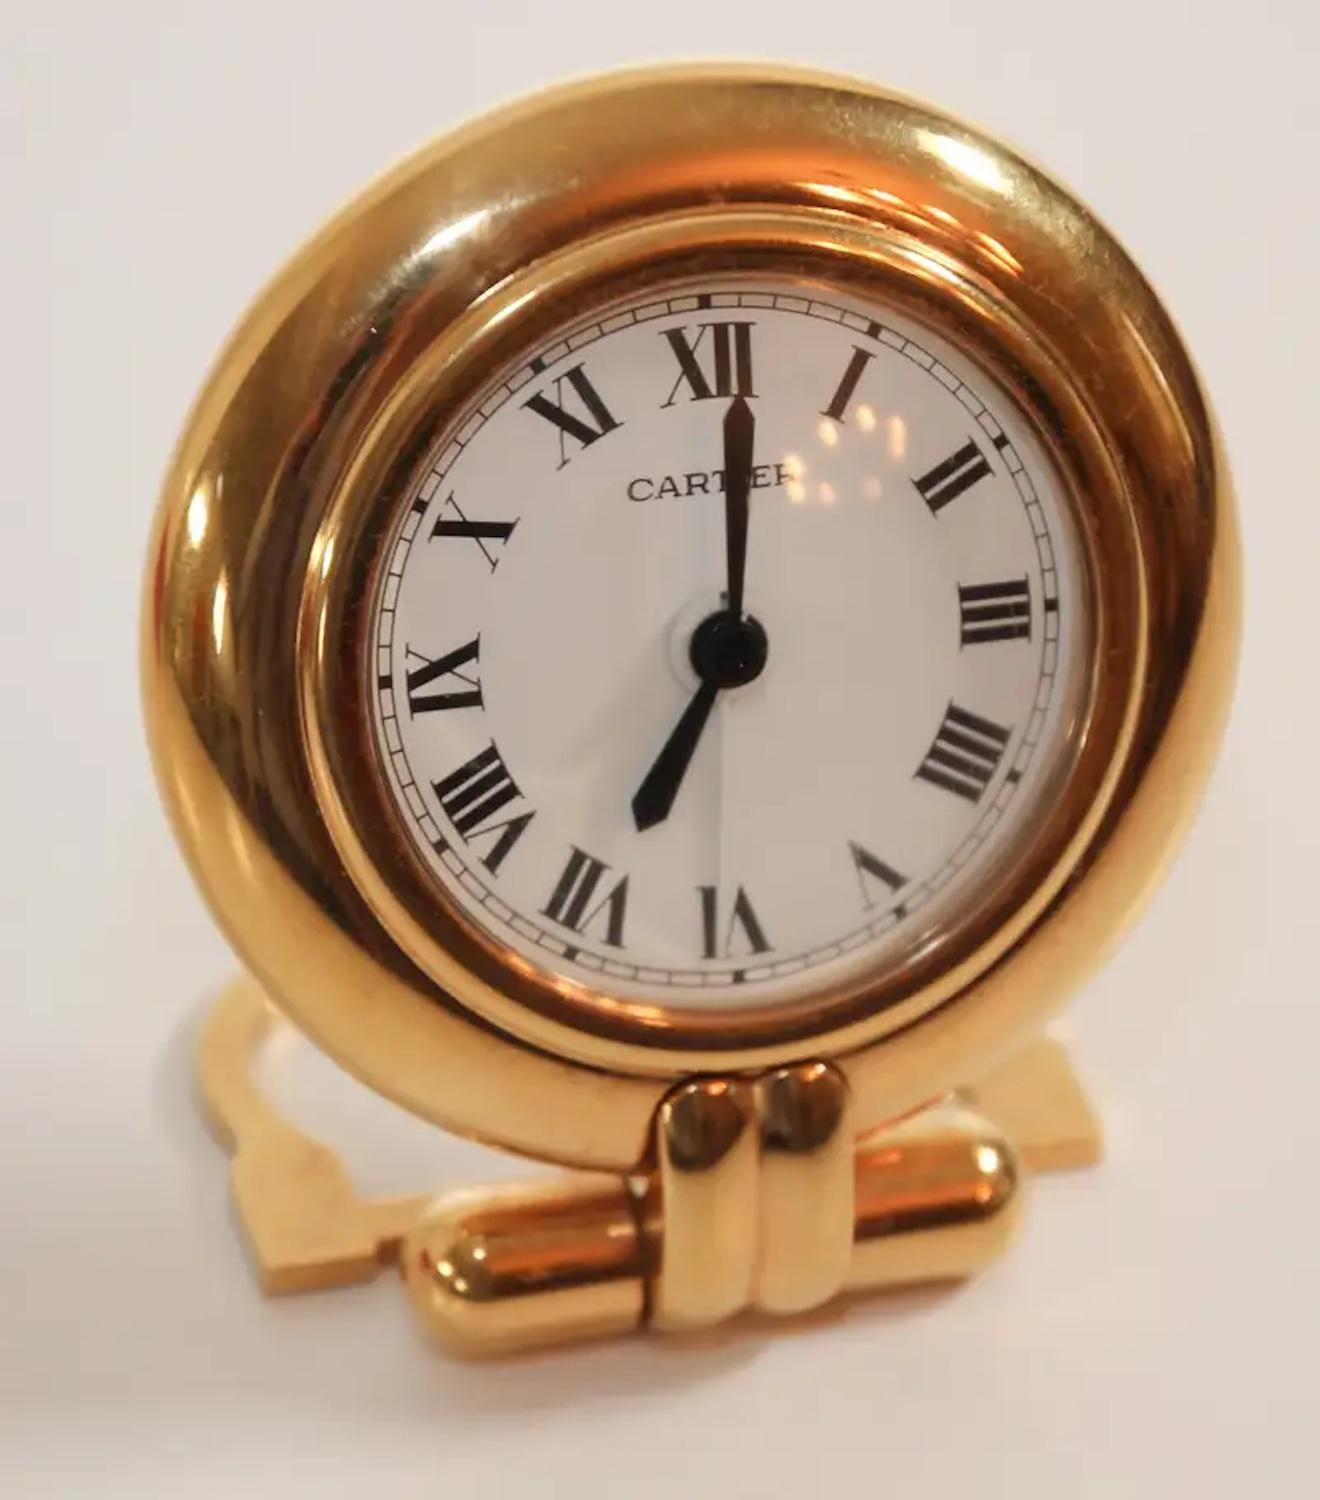 Ball Cut Cartier Colisee Art Deco Travel Desk Clock 24-Karat Gold-Plated